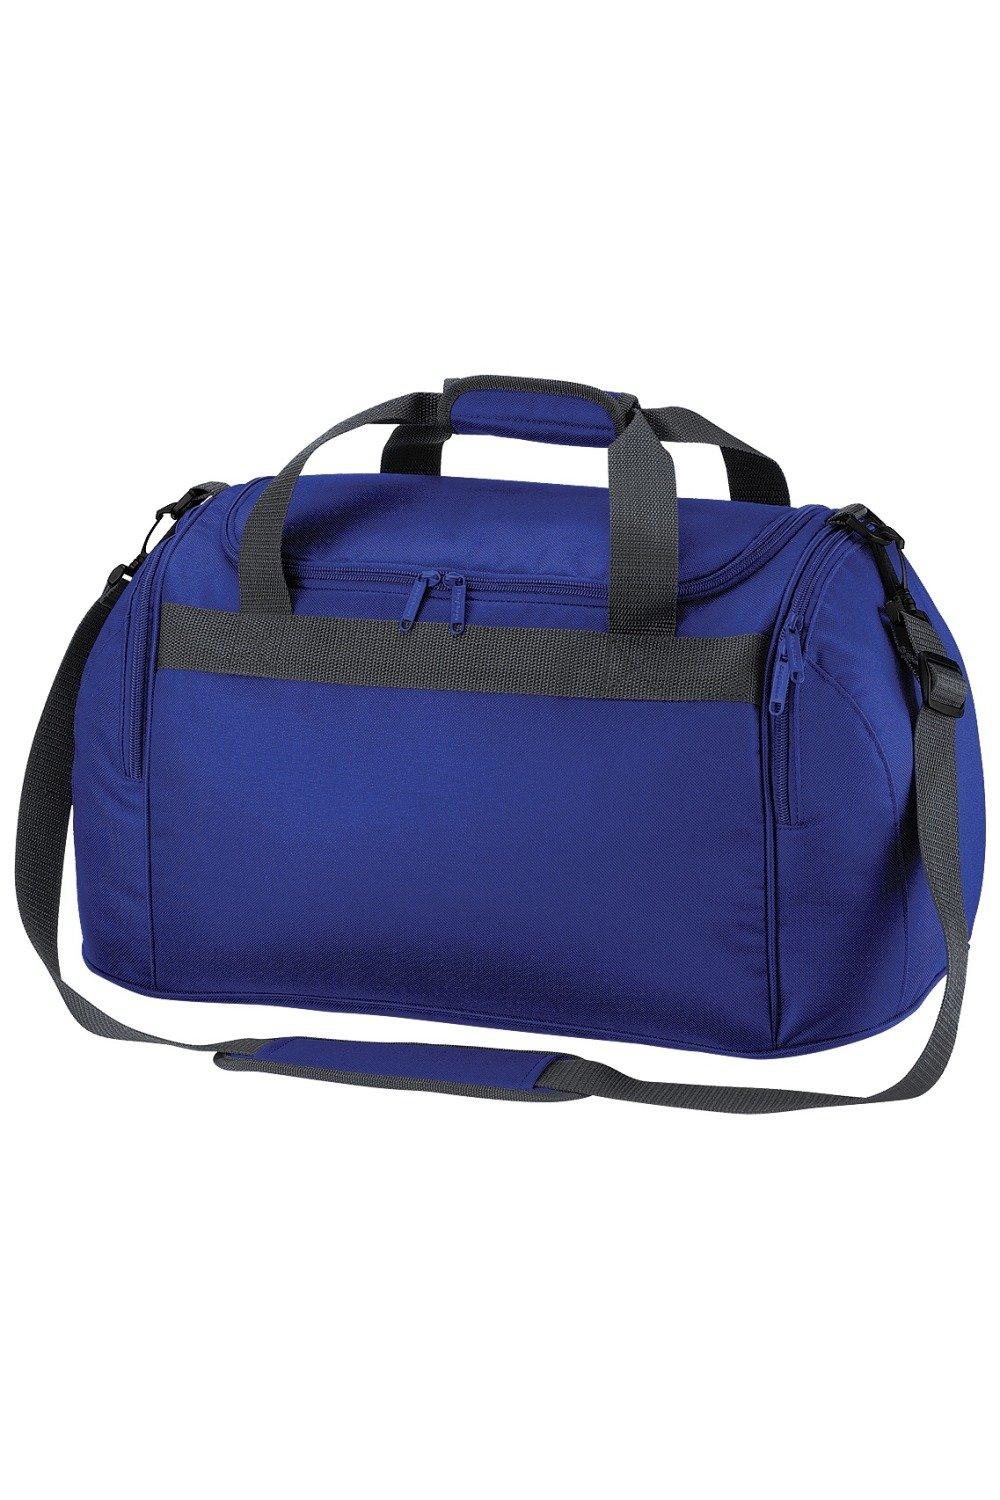 Дорожная сумка для фристайла/спортивная сумка (26 литров) Bagbase, синий пакет котики большой 38 5 x 28 x 15 см